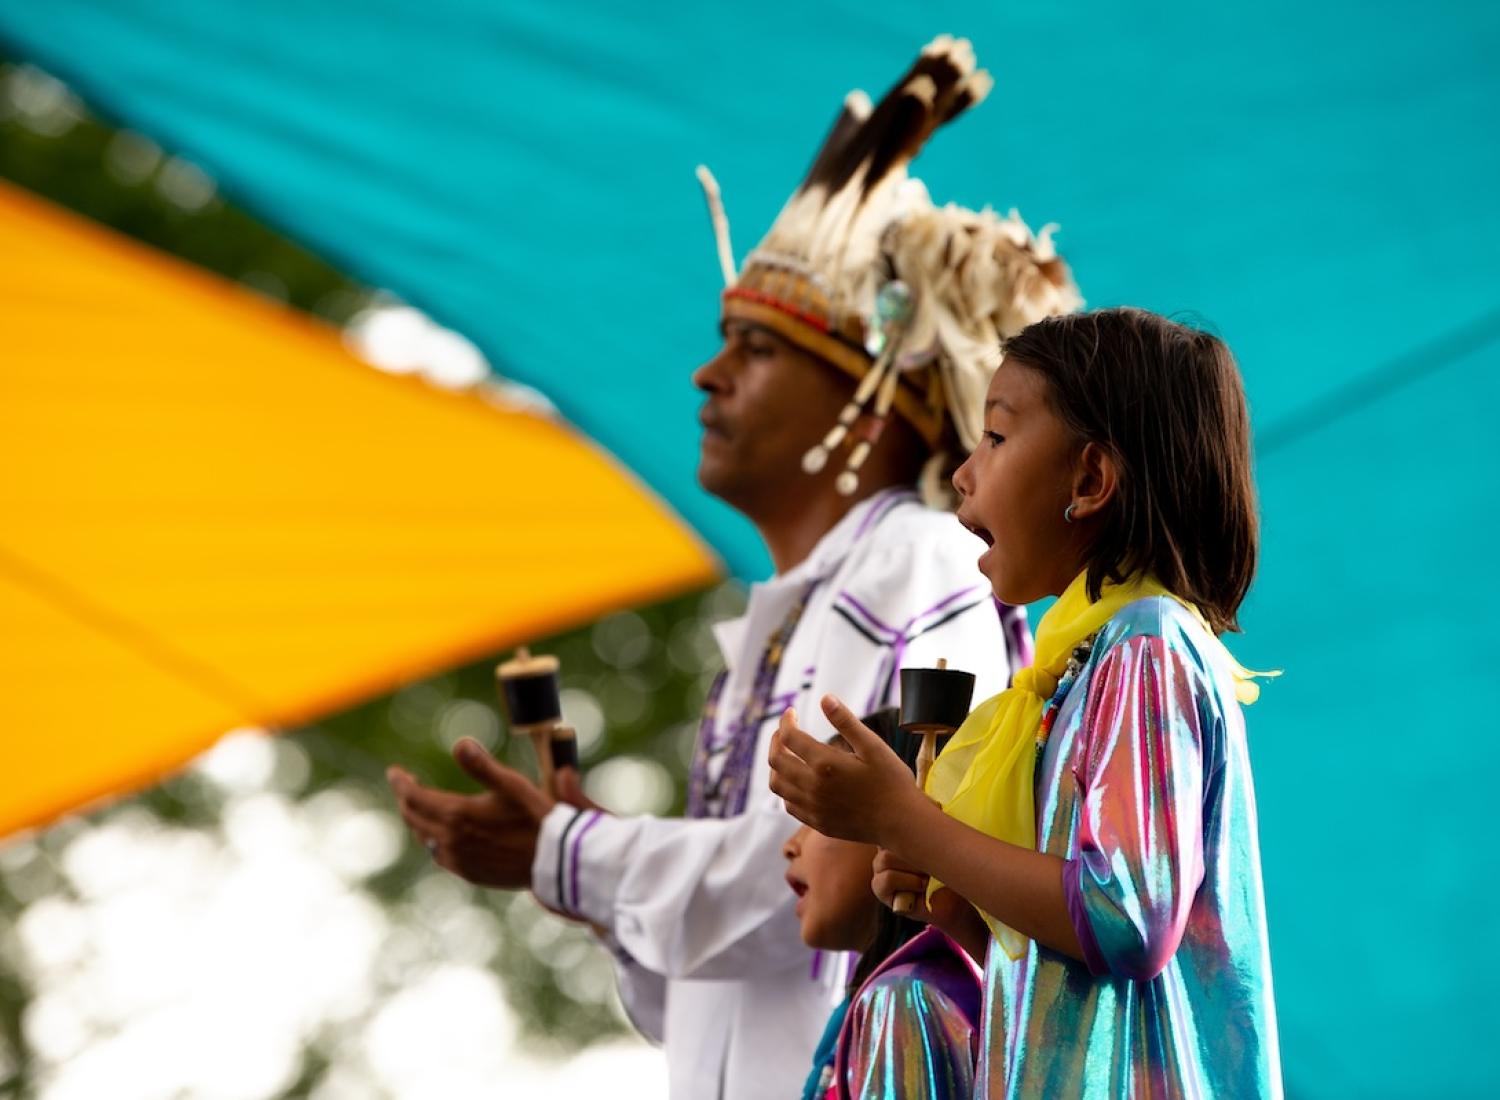 전통 의상을 입은 남자와 어린 소녀가 청록색 배경 앞에서 노래를 부르고 있습니다.